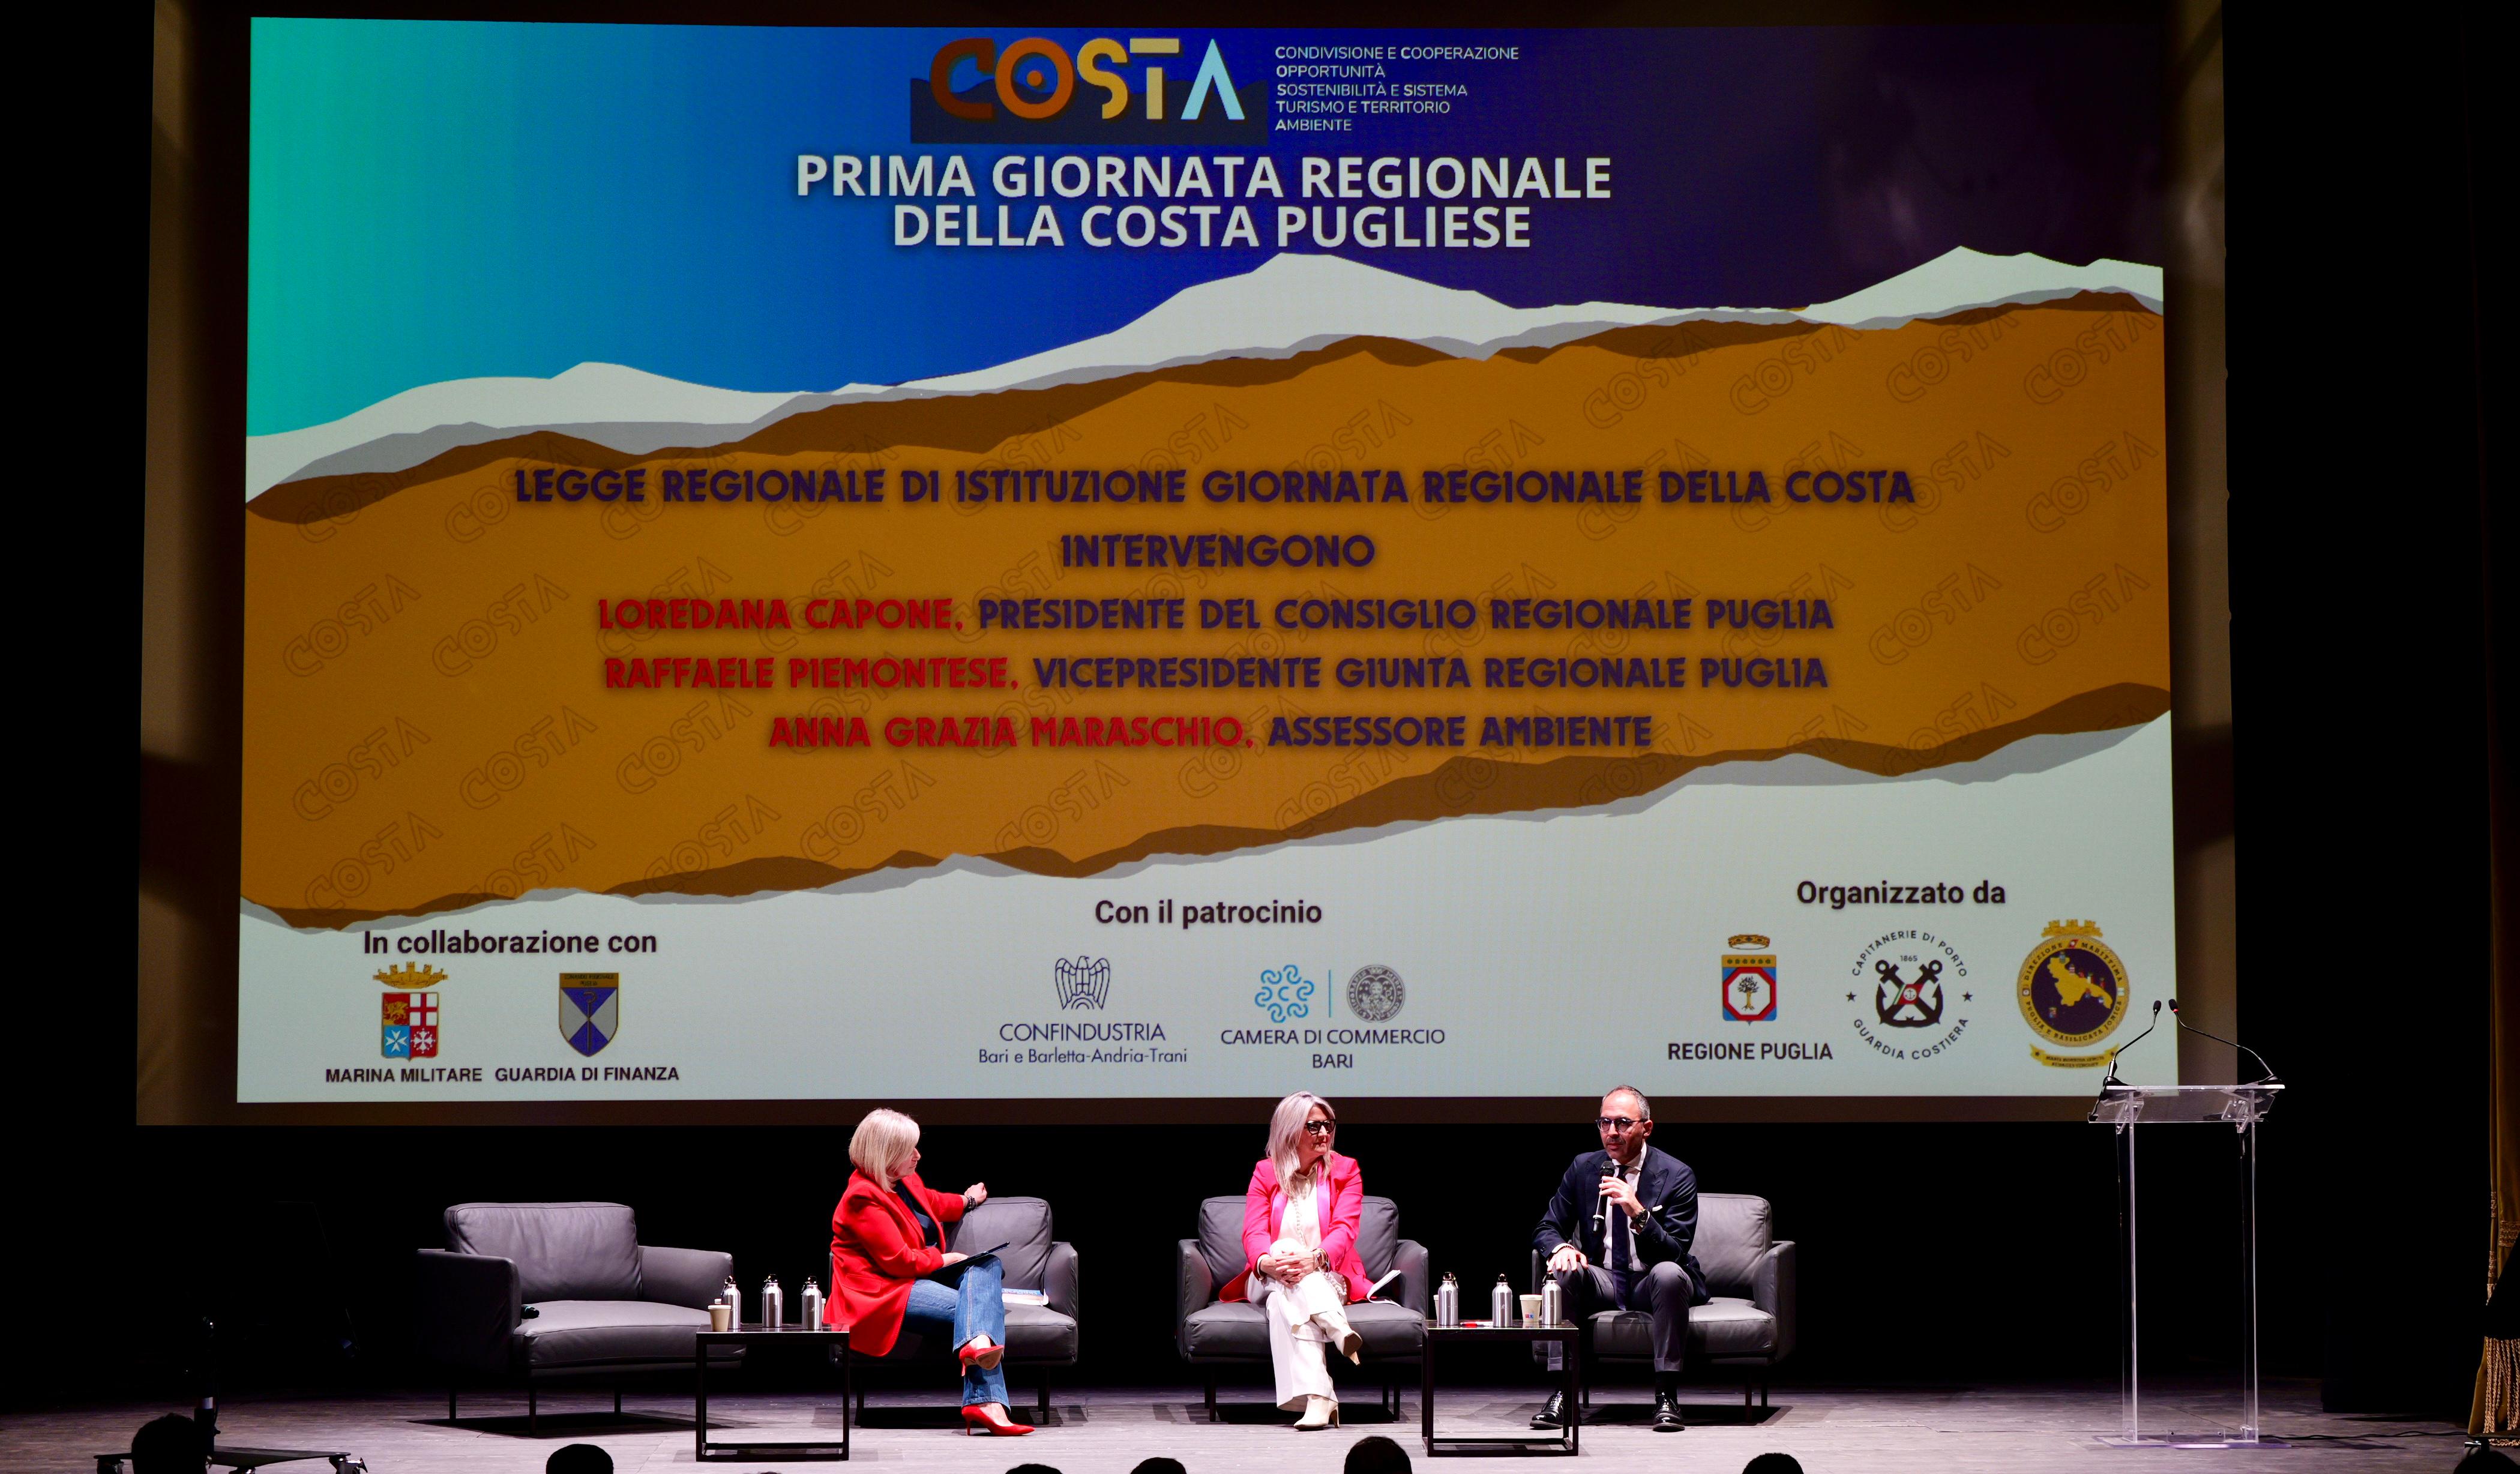 Galleria Celebrazione della prima giornata regionale della costa pugliese - Diapositiva 4 di 7